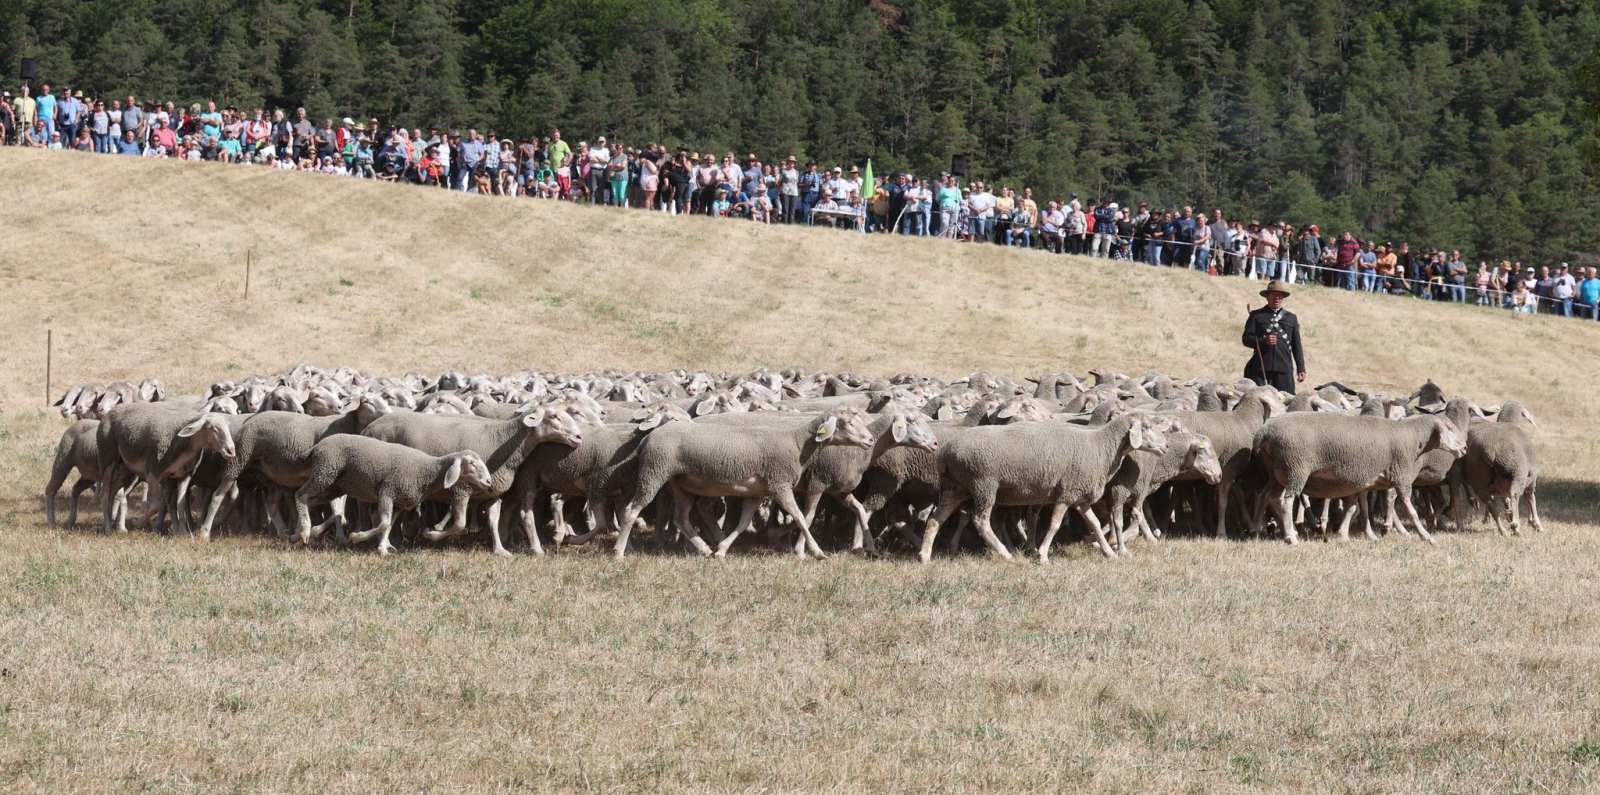 Schäfer Herbert Kind aus Königsee steht auf der Weide beim 29. Thüringer Schäfertag und den Landesmeisterschaften im Schafehüten.